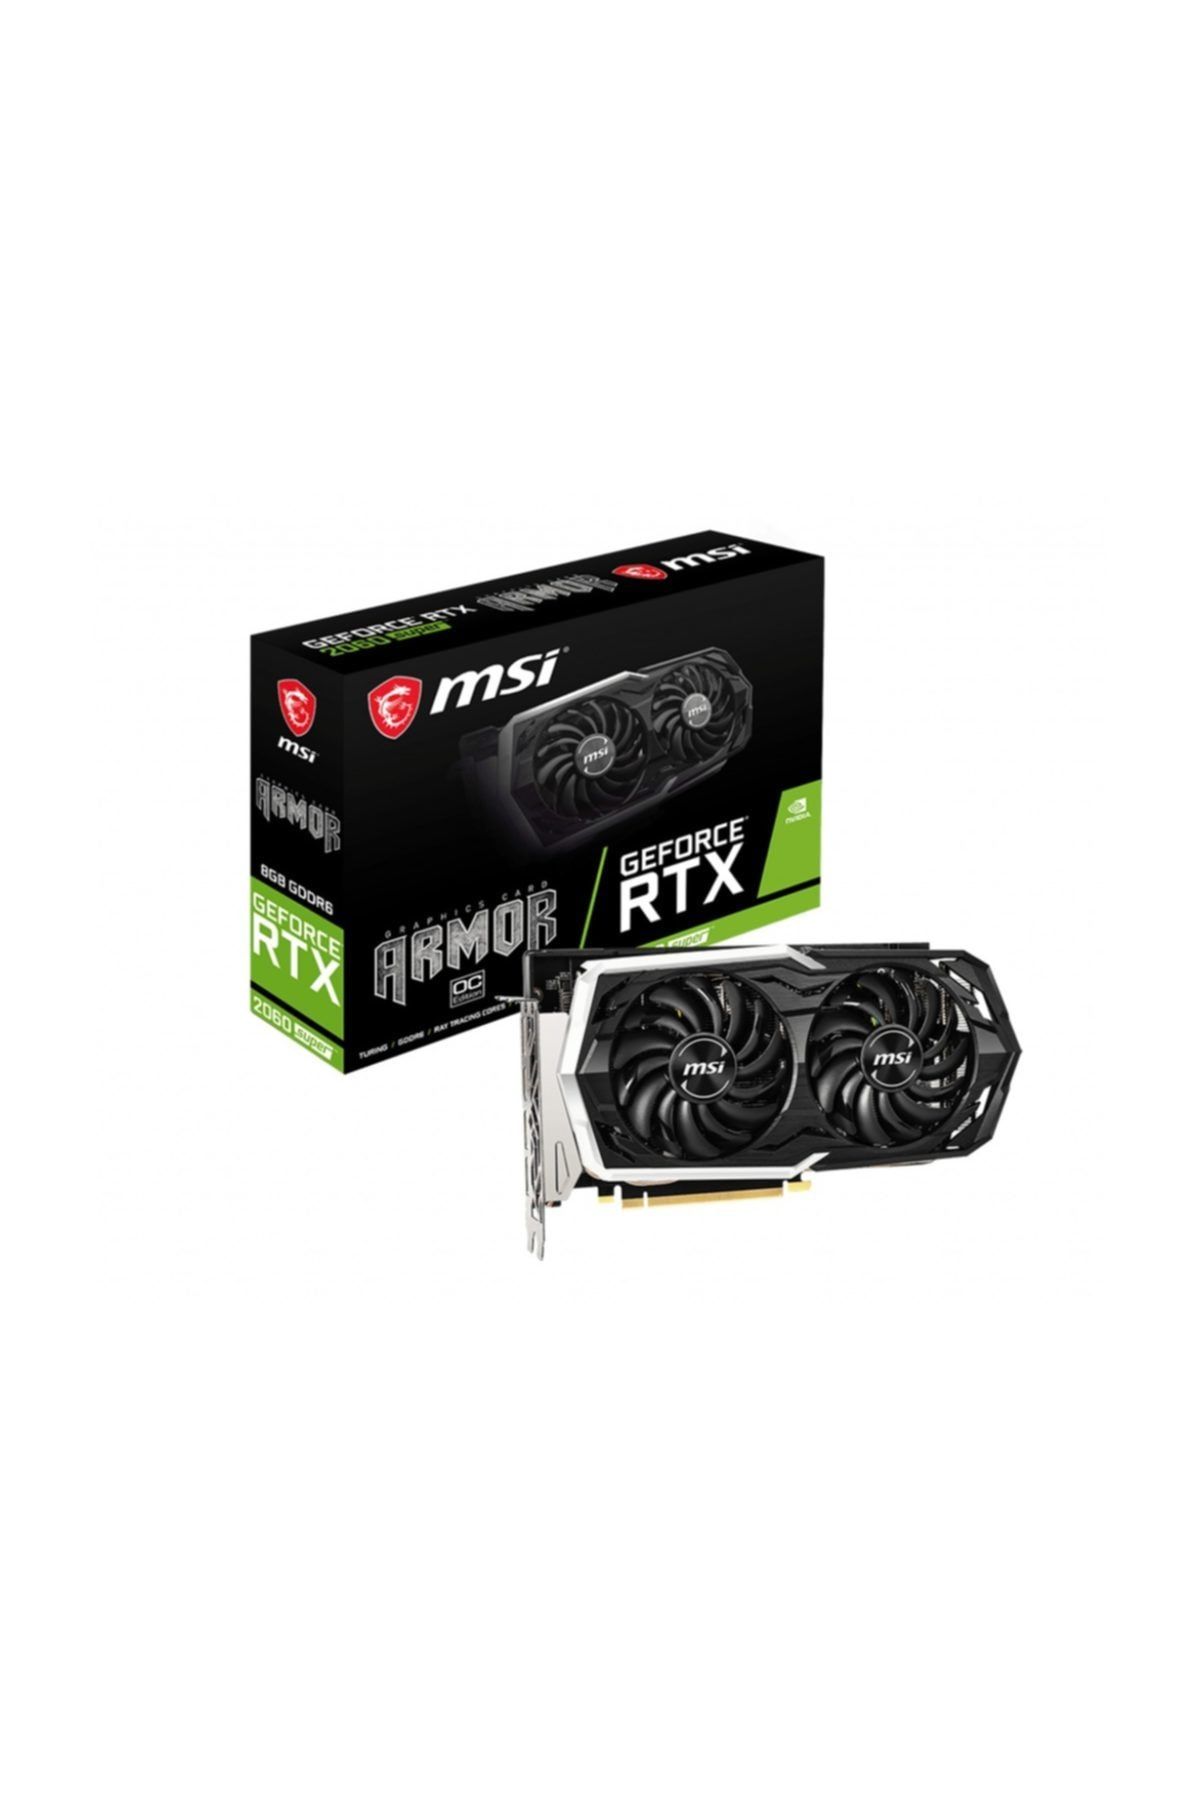 MSI GeForce RTX 2060 SUPER ARMOR OC RTX2060S 8GB GDDR6 256B (1XHDMI 3XDP) Ekran Kartı